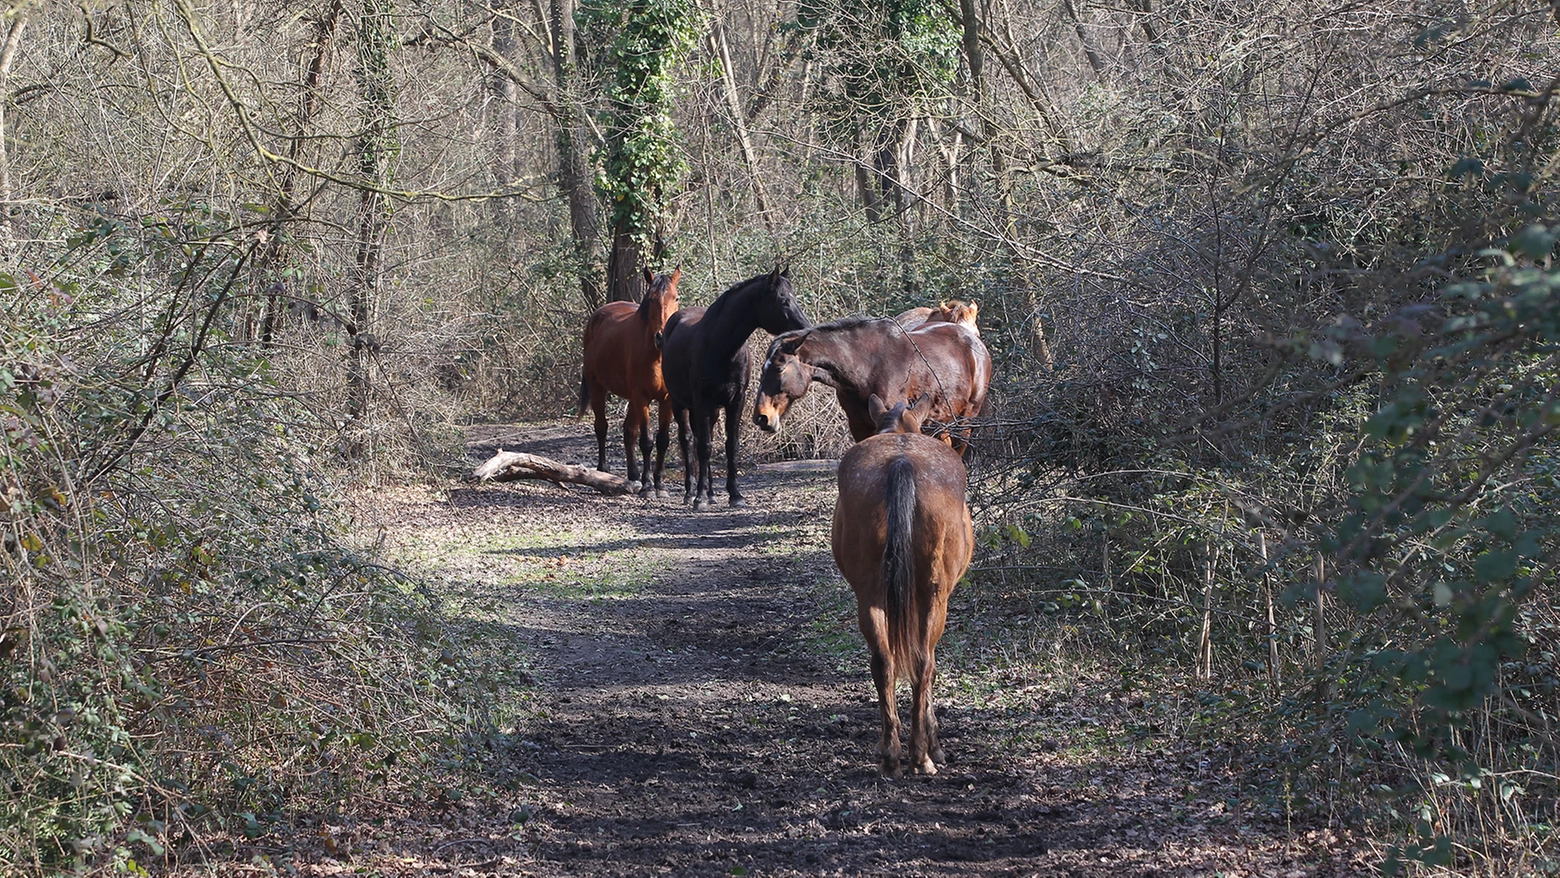 I cavalli vagavano da giorni nella zona della Tuscia